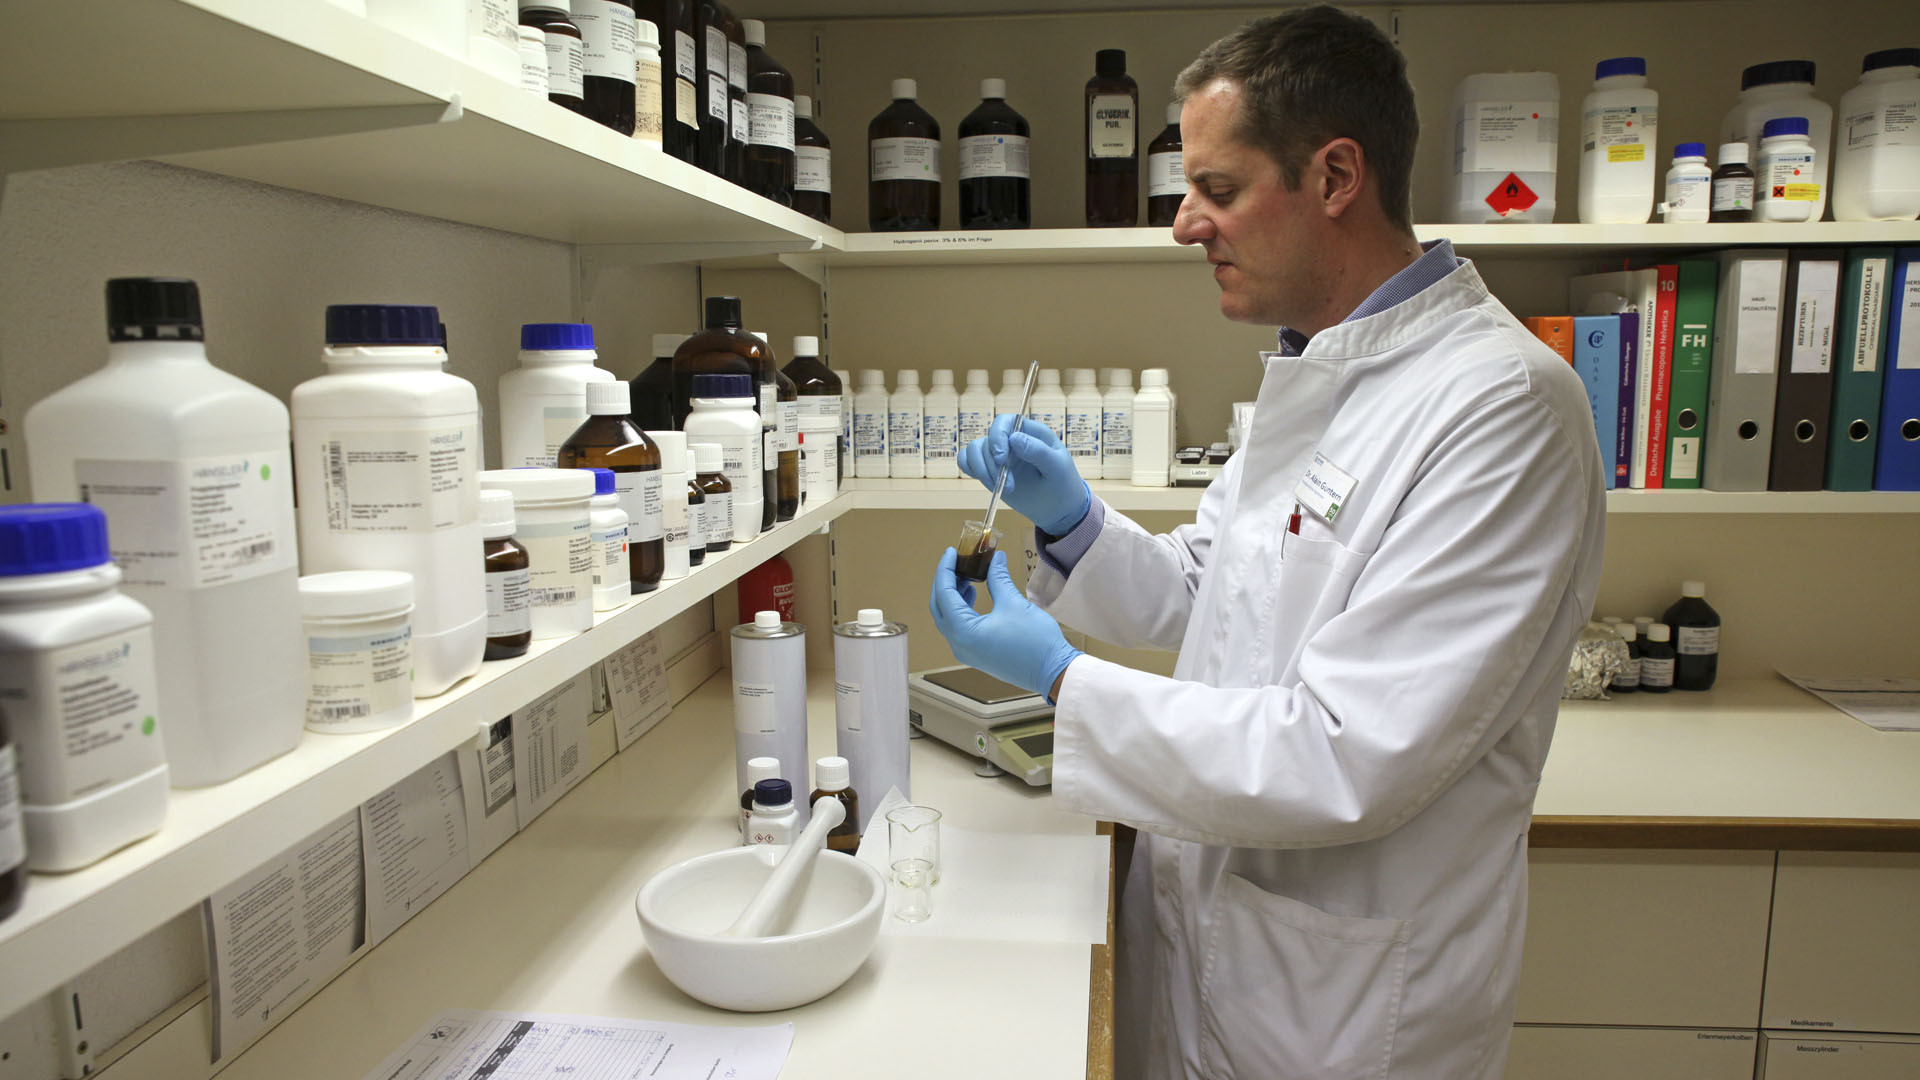 Brig le 15 mars 2016. Le docteur Alain Guntern, dans le laboratoire de sa pharmacie. Il élabore un échantillon d'huile. (Photo: B. Hallet)